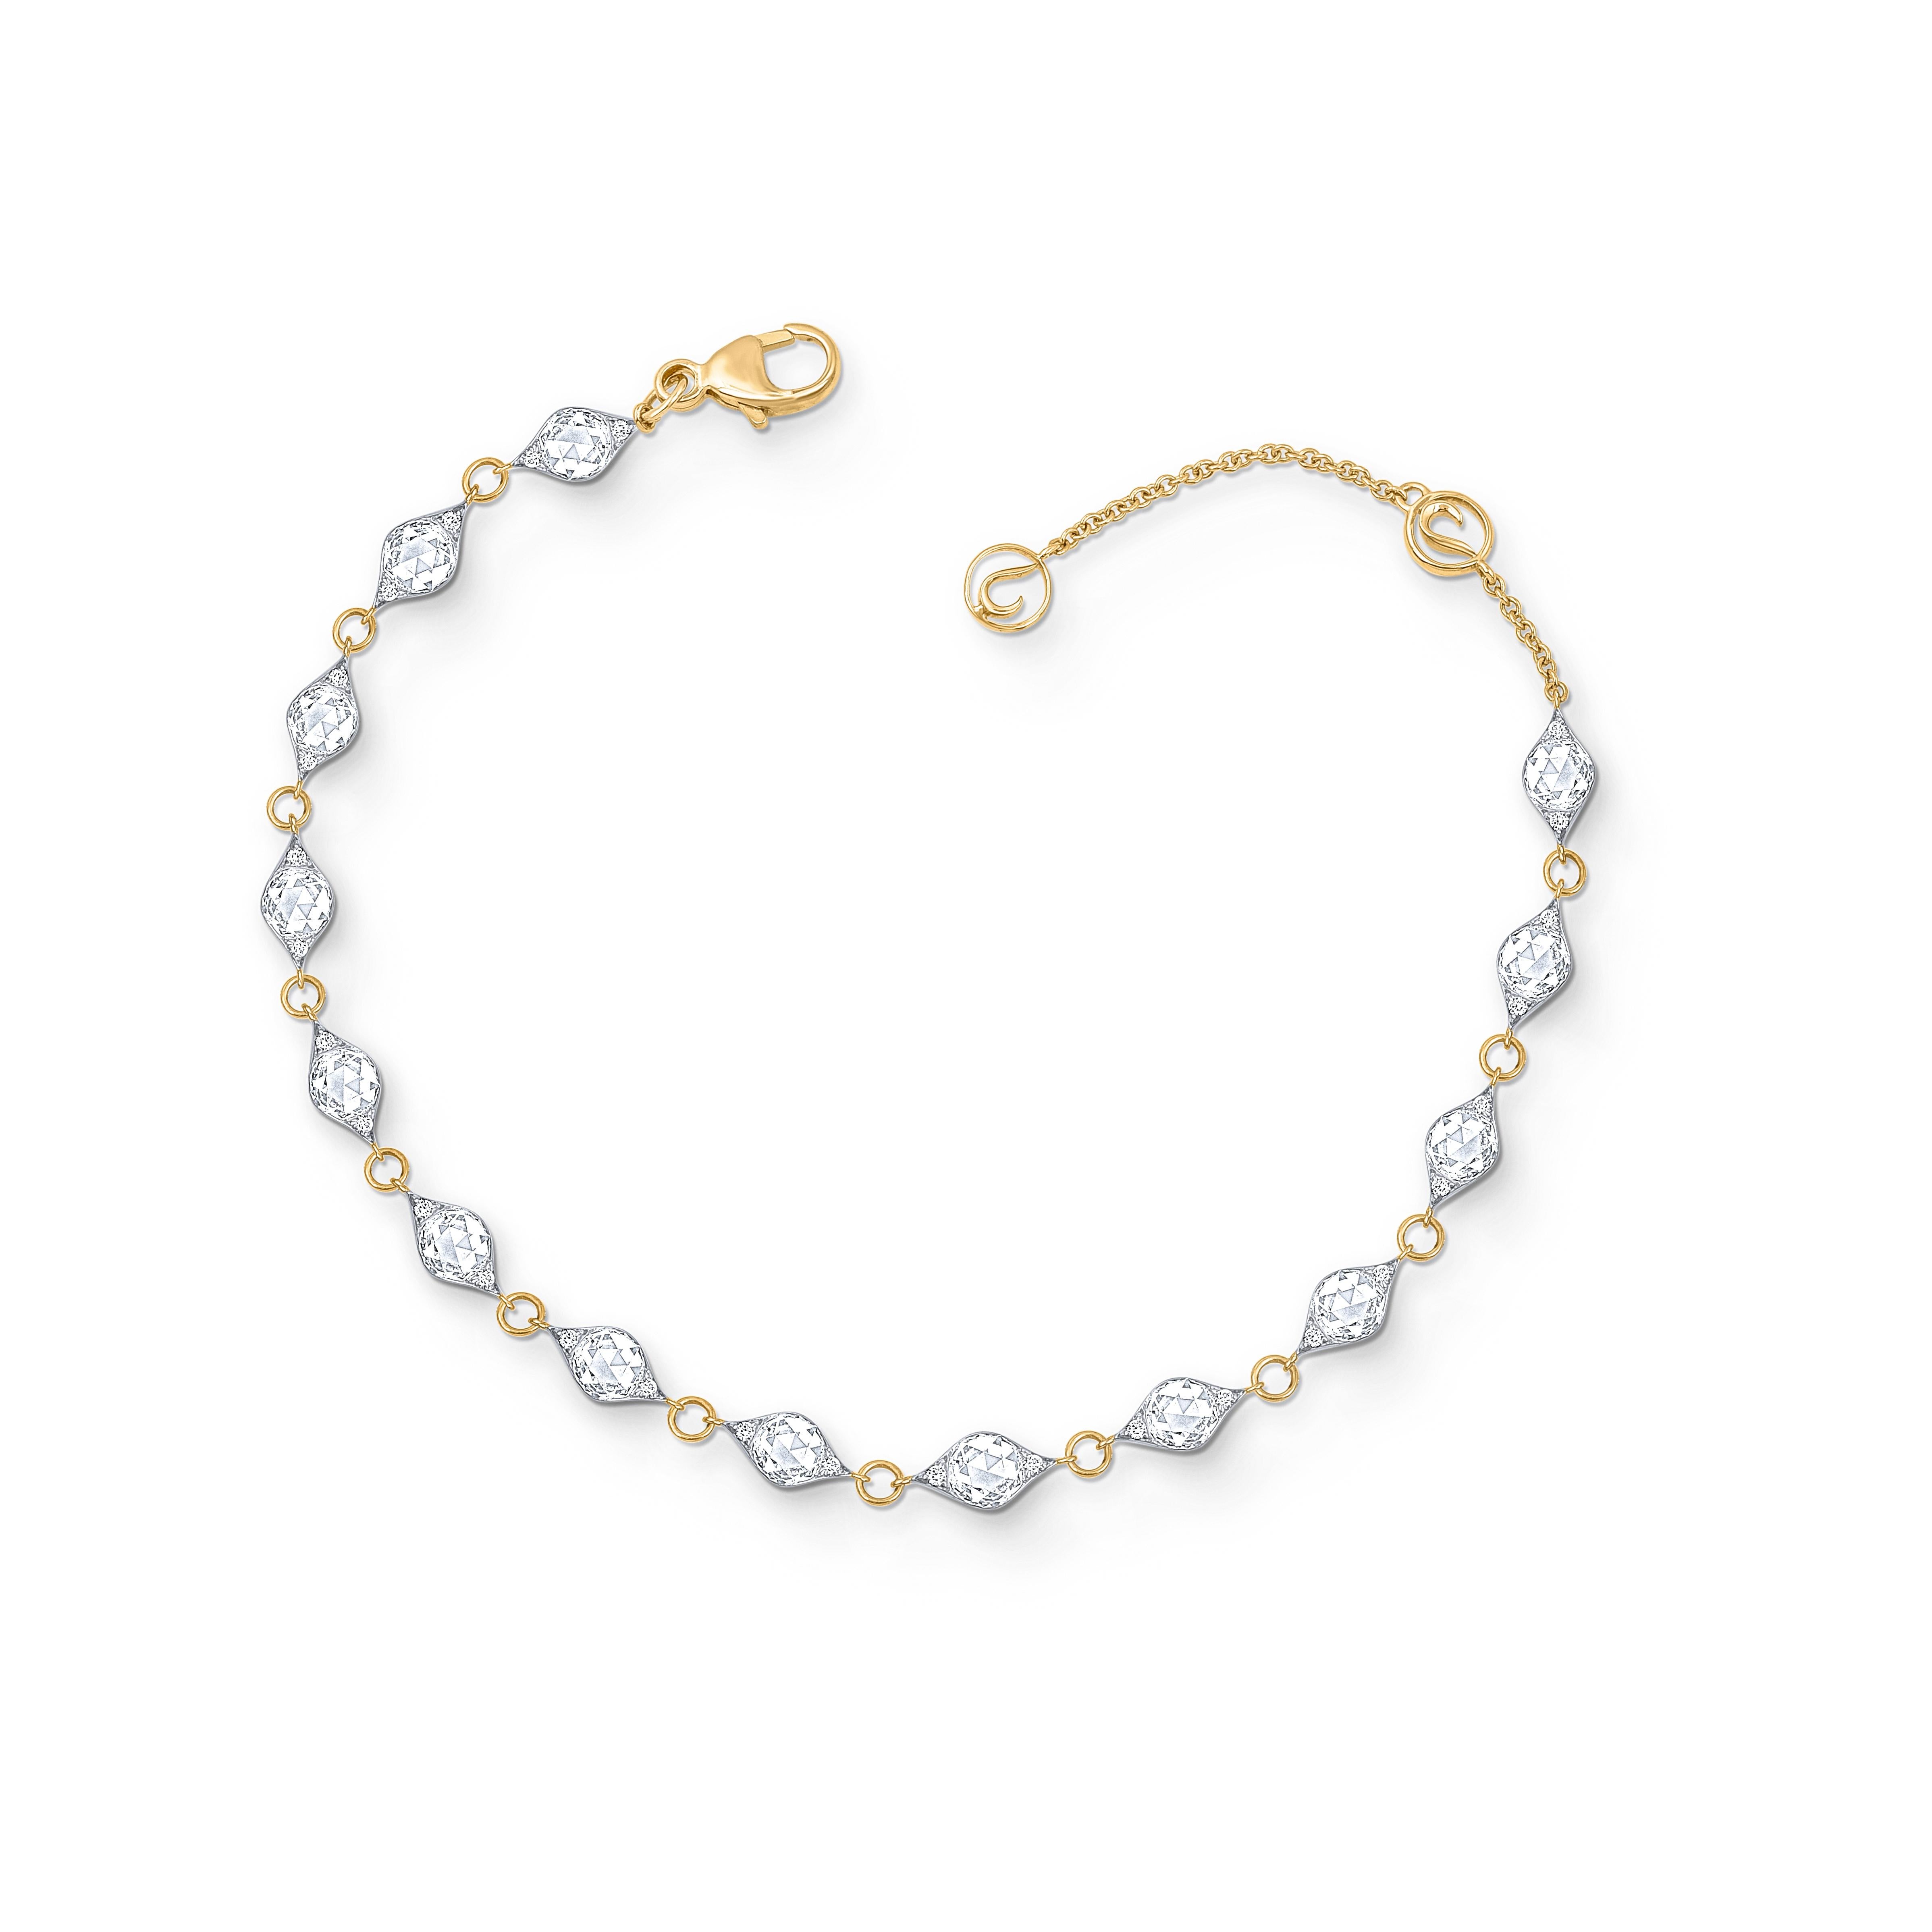 Das Armband der Mandala Collection ist mit Diamanten im Brillant- und Rosenschliff besetzt und aus 18kt Weiß- und Gelbgold gefertigt. Die Diamanten sind mit D-F Farbe und IF-VS Reinheit bewertet. Das Gesamtgewicht der Diamanten beträgt 1 5/8